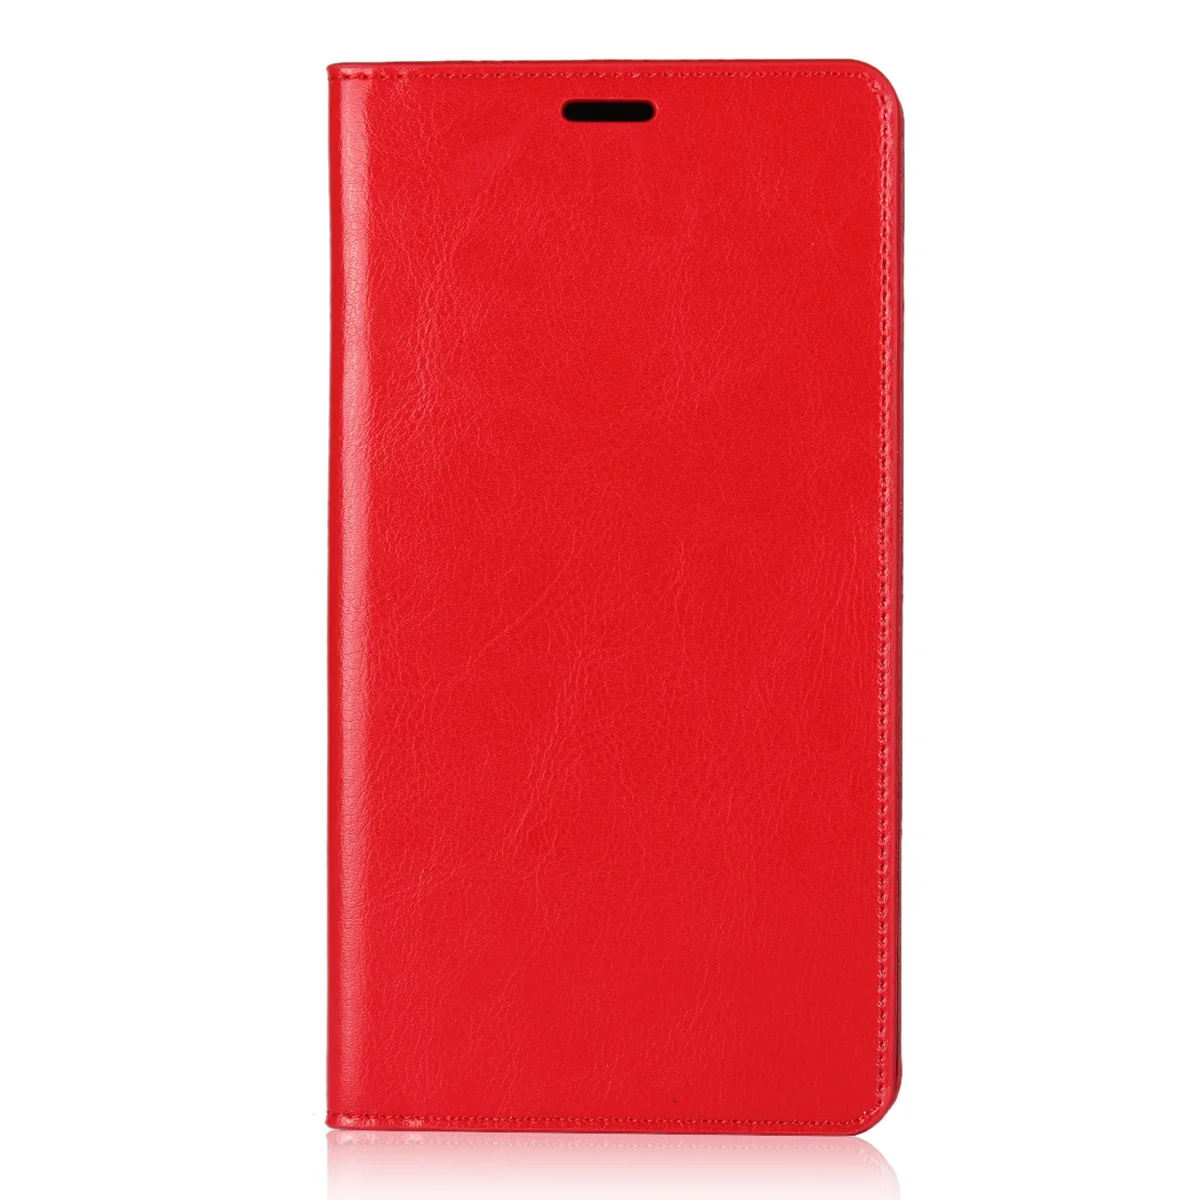 Роскошный винтажный Чехол-портмоне из натуральной кожи для Xiaomi Mi Max 2 чехол Crazy Horse с откидной крышкой для Xiaomi Mi Max 2, аксессуары - Цвет: Red